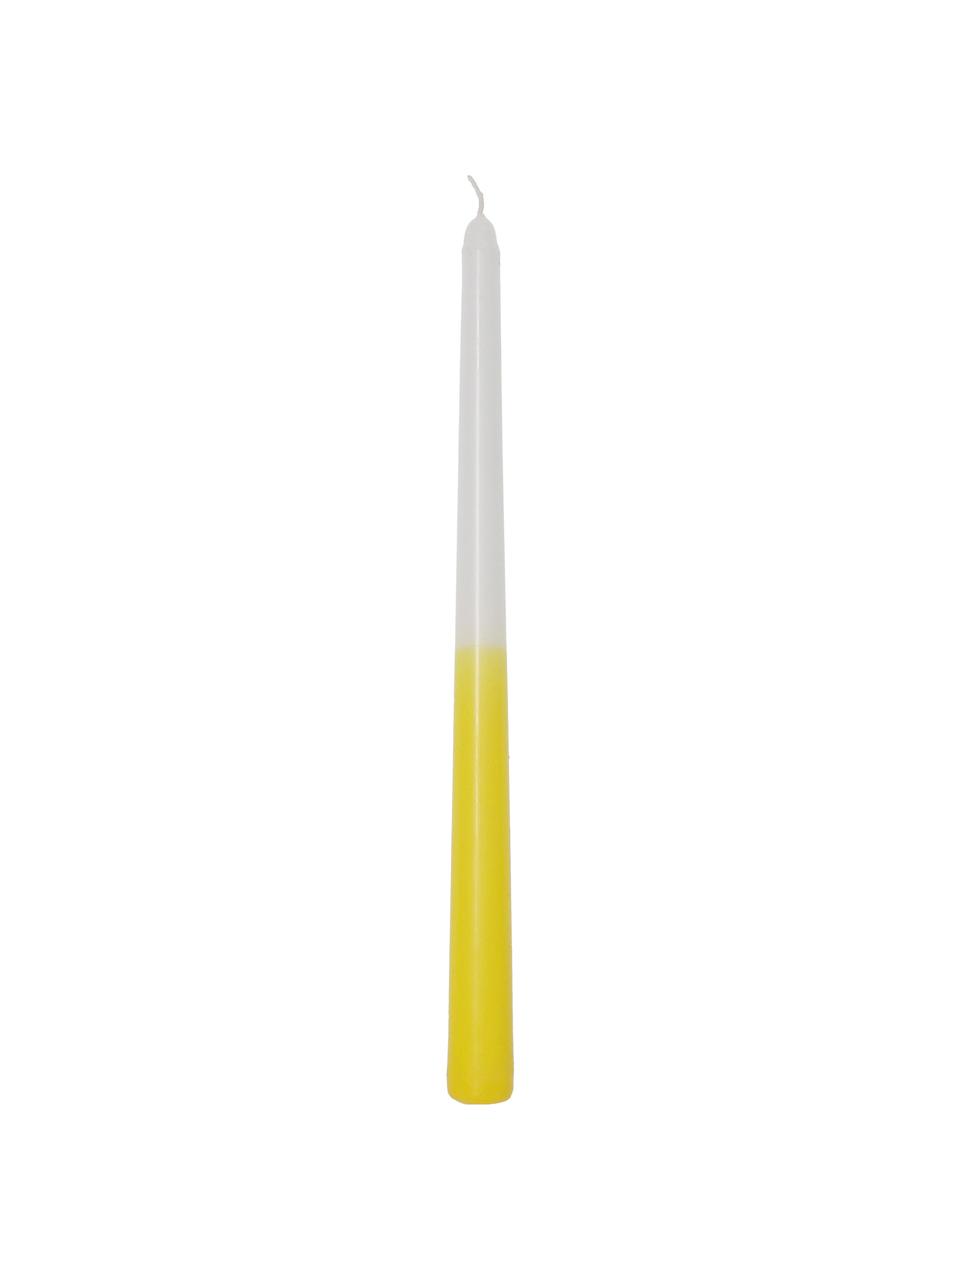 Stabkerzen Dubli in Gelb/Weiß, 4 Stück, Wachs, Gelb, Weiß, Ø 2 x H 31 cm